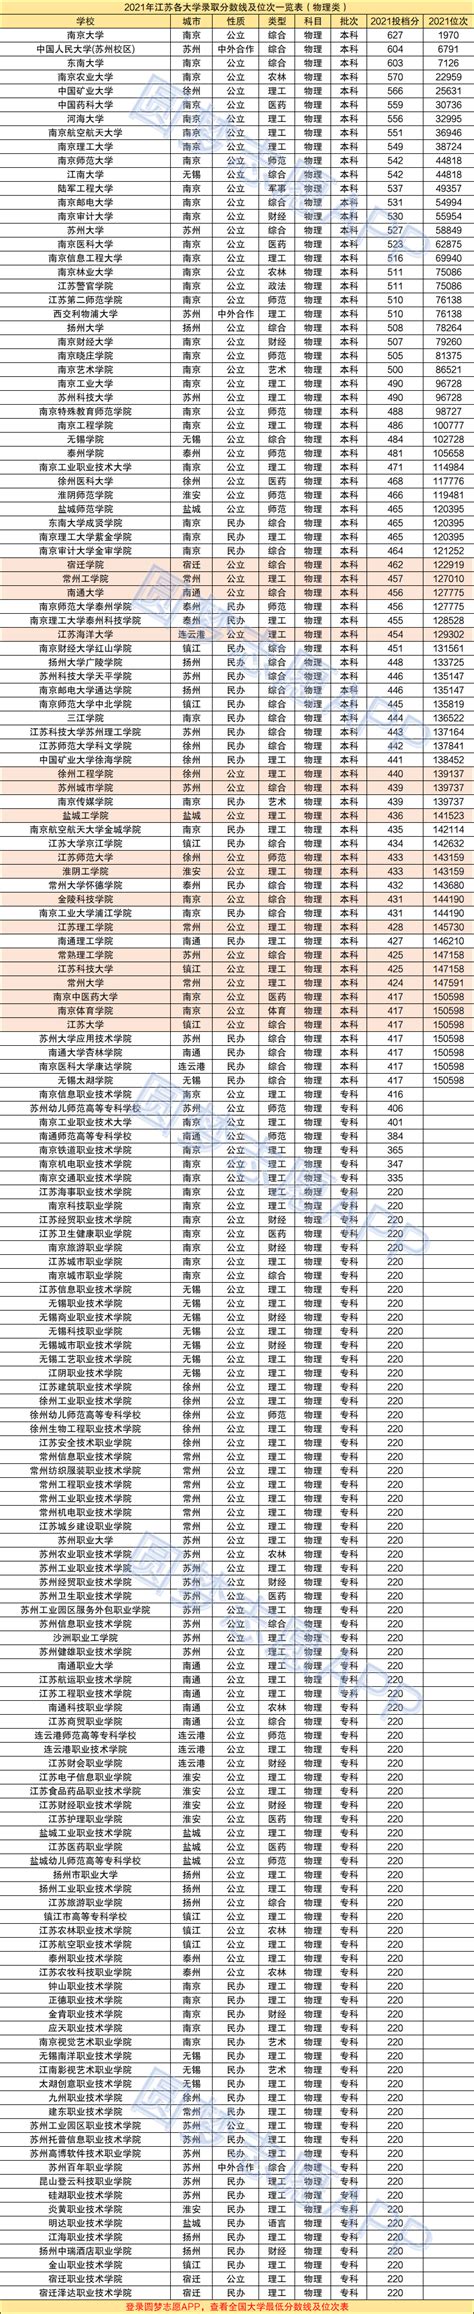 江苏各大学人均经费排名，江苏高校经费排名前30强